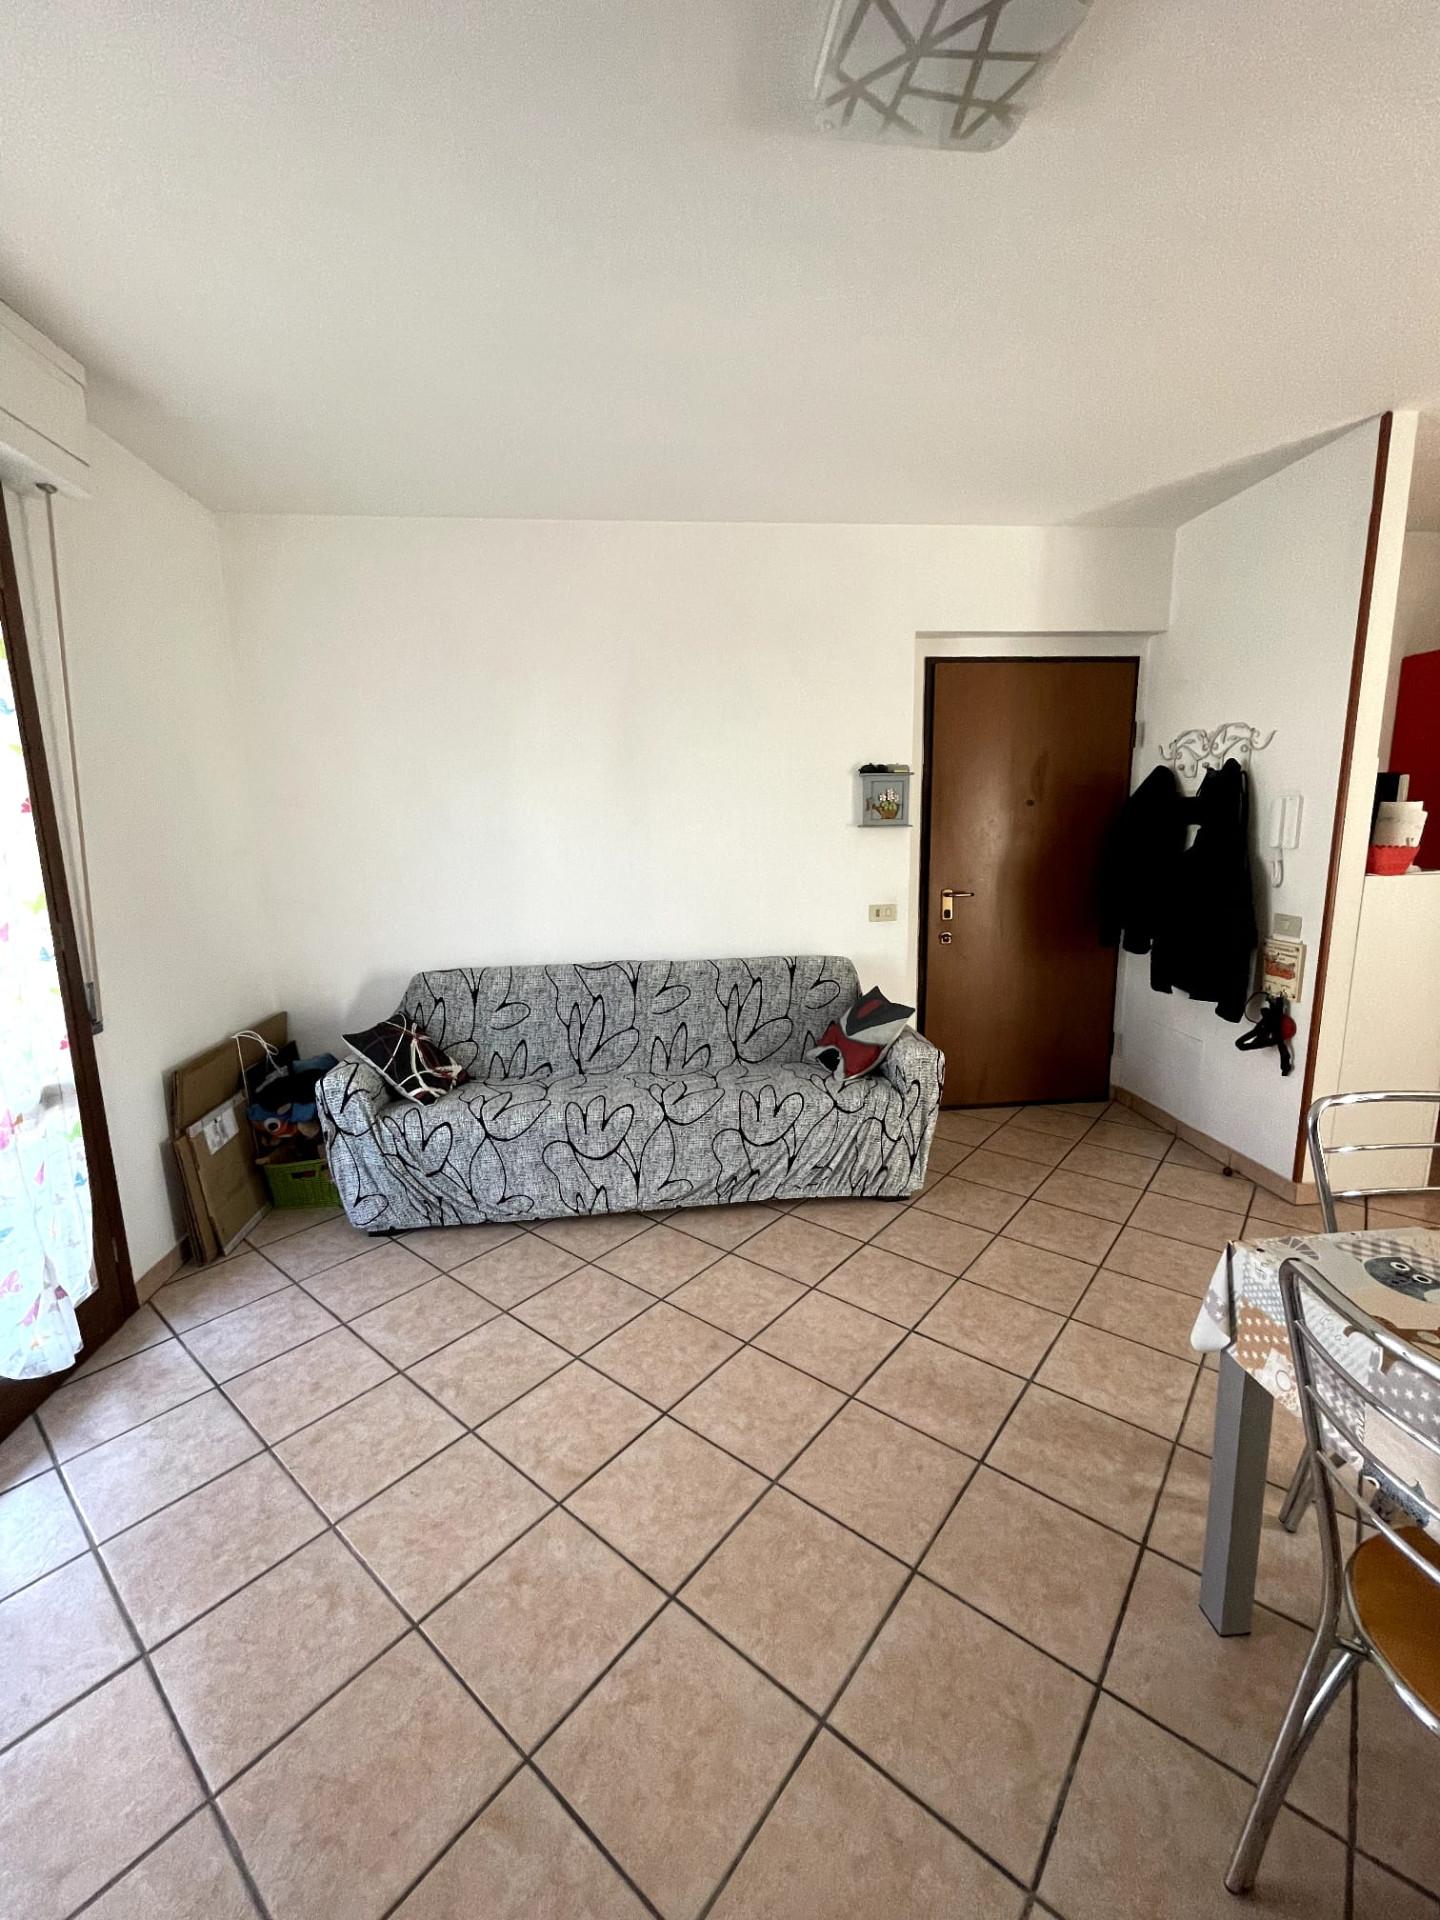 Appartamento in affitto a Poggio a Caiano, 2 locali, prezzo € 660 | PortaleAgenzieImmobiliari.it